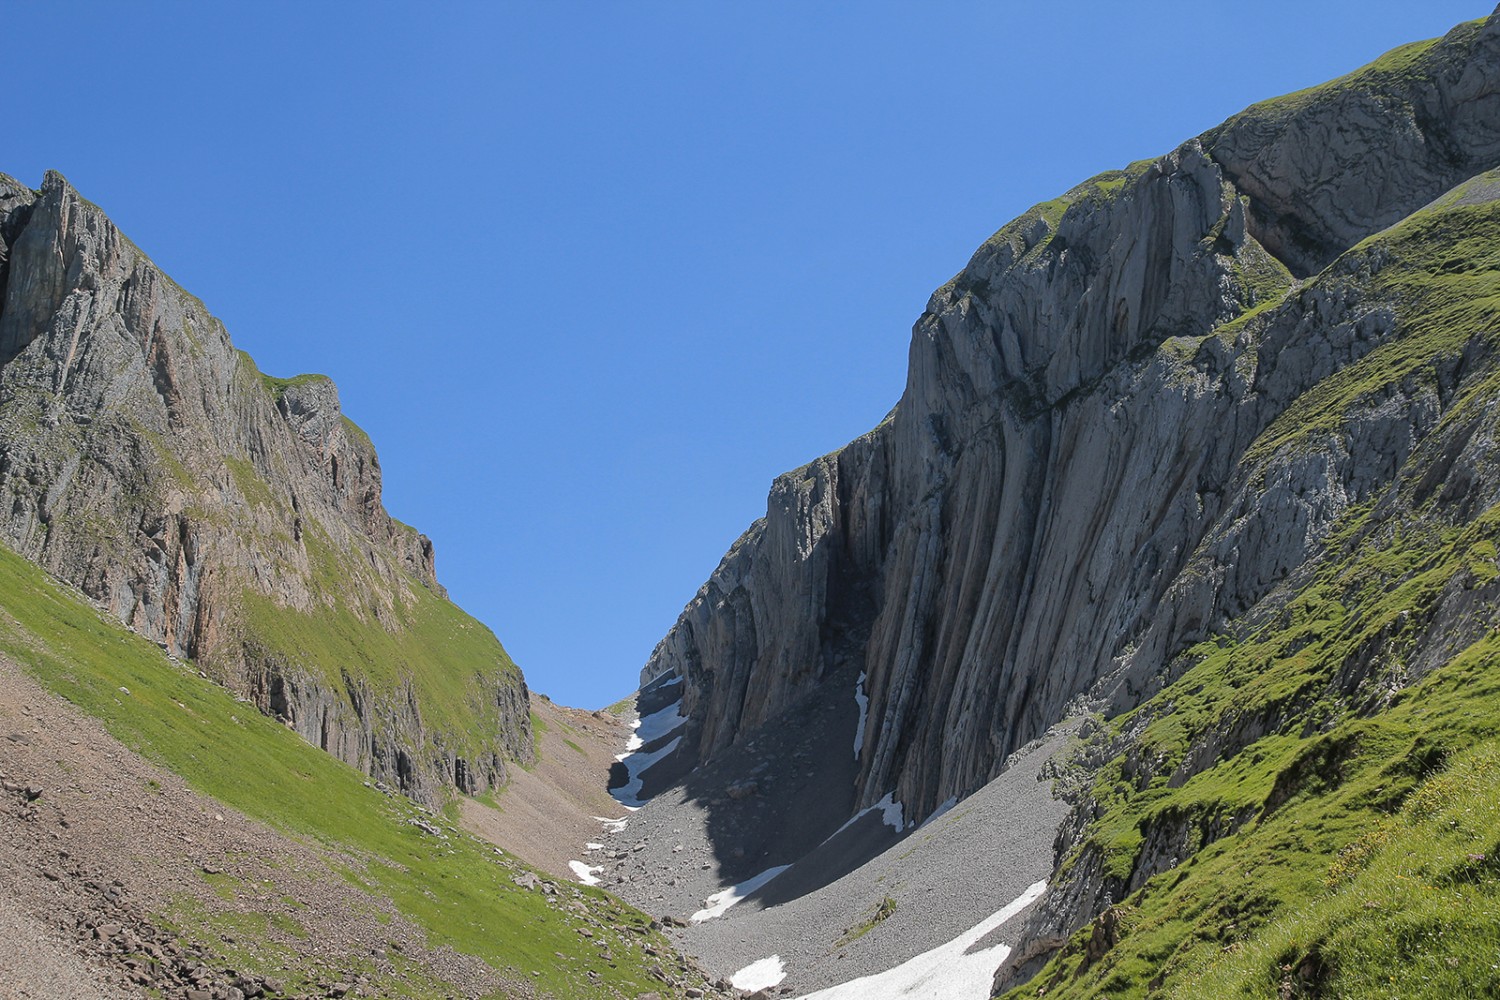 Im Gross Mälchtal ist der Weg eingeklemmt zwischen steilen Felswänden.